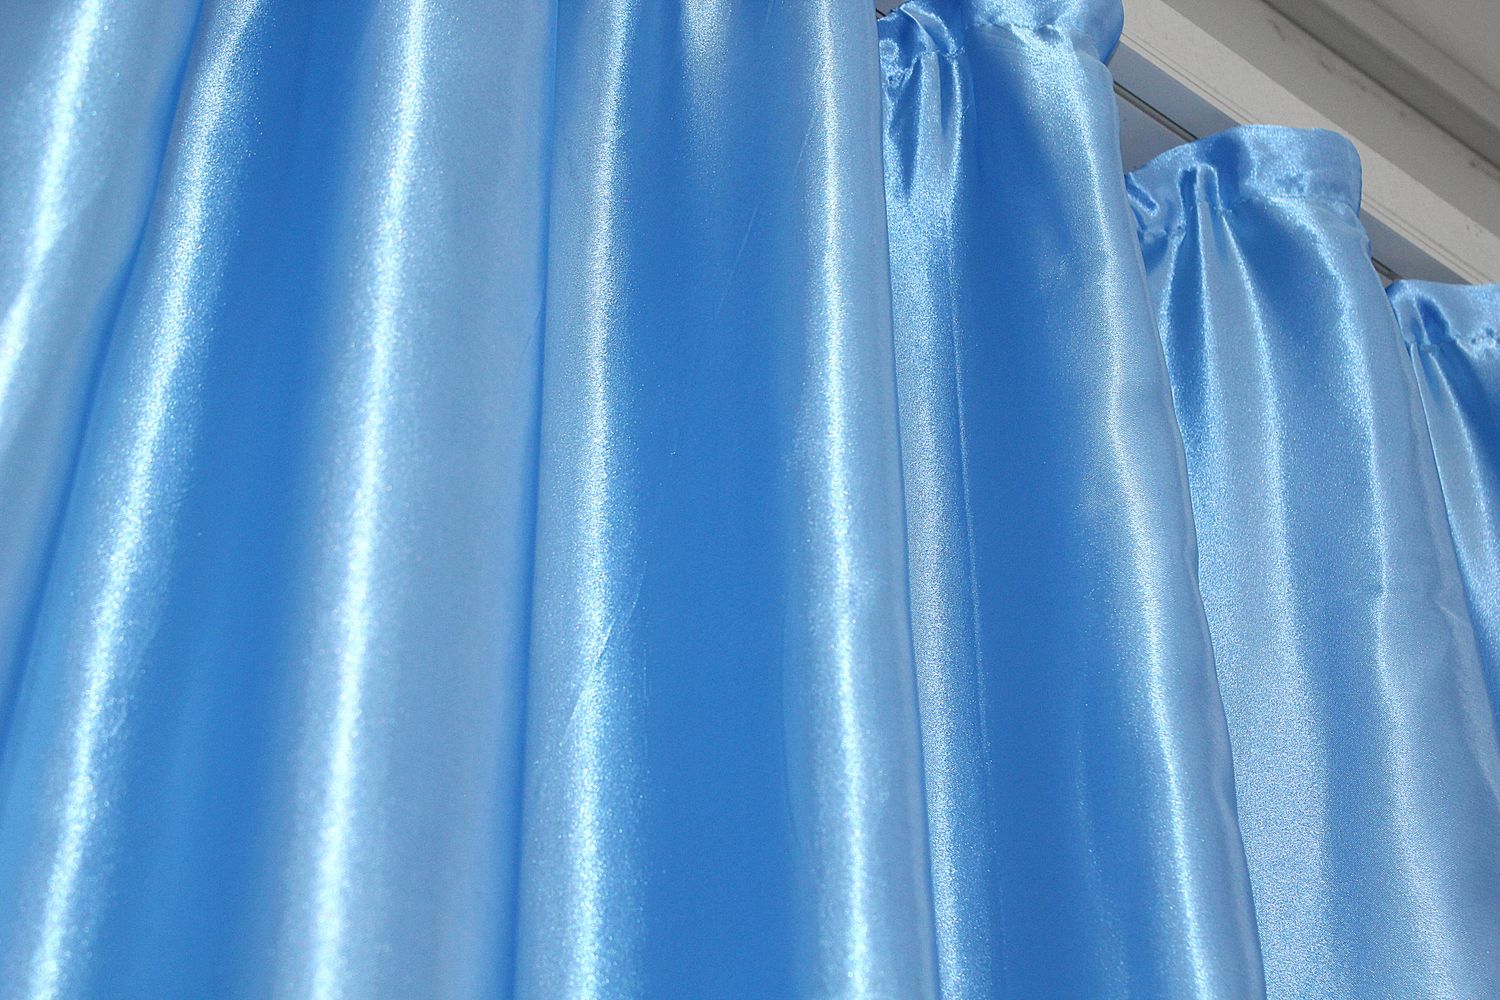 Комплект штор из ткани атлас цвет темно-голубой 1155ш, Темно-голубой, Комплект штор (2шт. 1,5х2,7м.), Классические, Без ламбрекена, Длинные, 1,5 м., 2,7 м., 150, 270, 2 - 3 м., В комплекте 2 шт., Тесьма